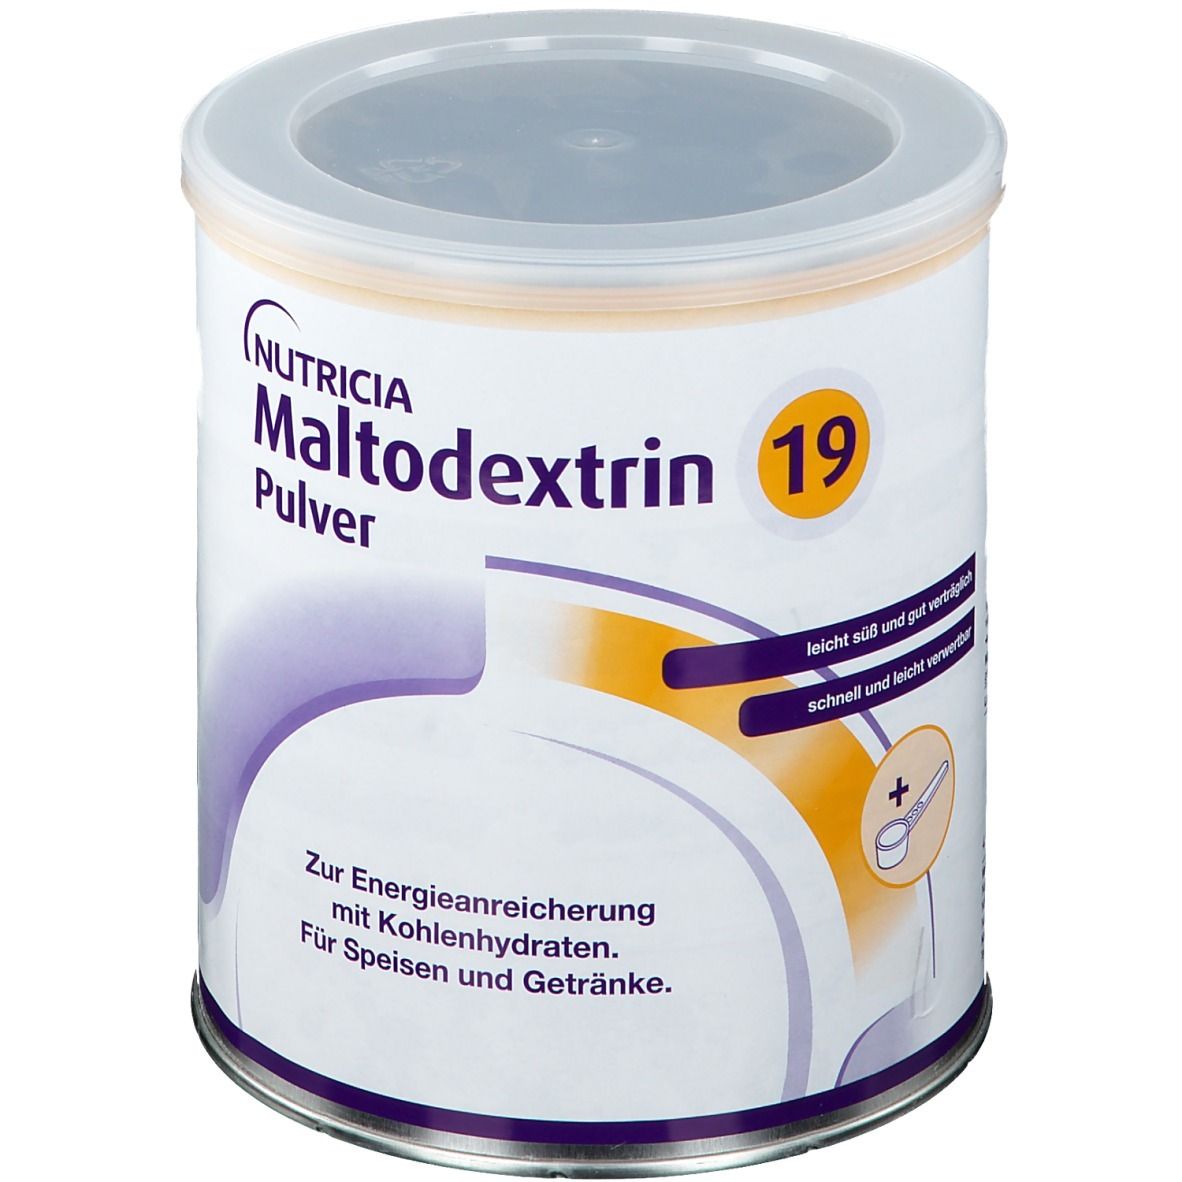 Maltodextrin 19 Pulver zur Energieanreicherung; leicht süßlich